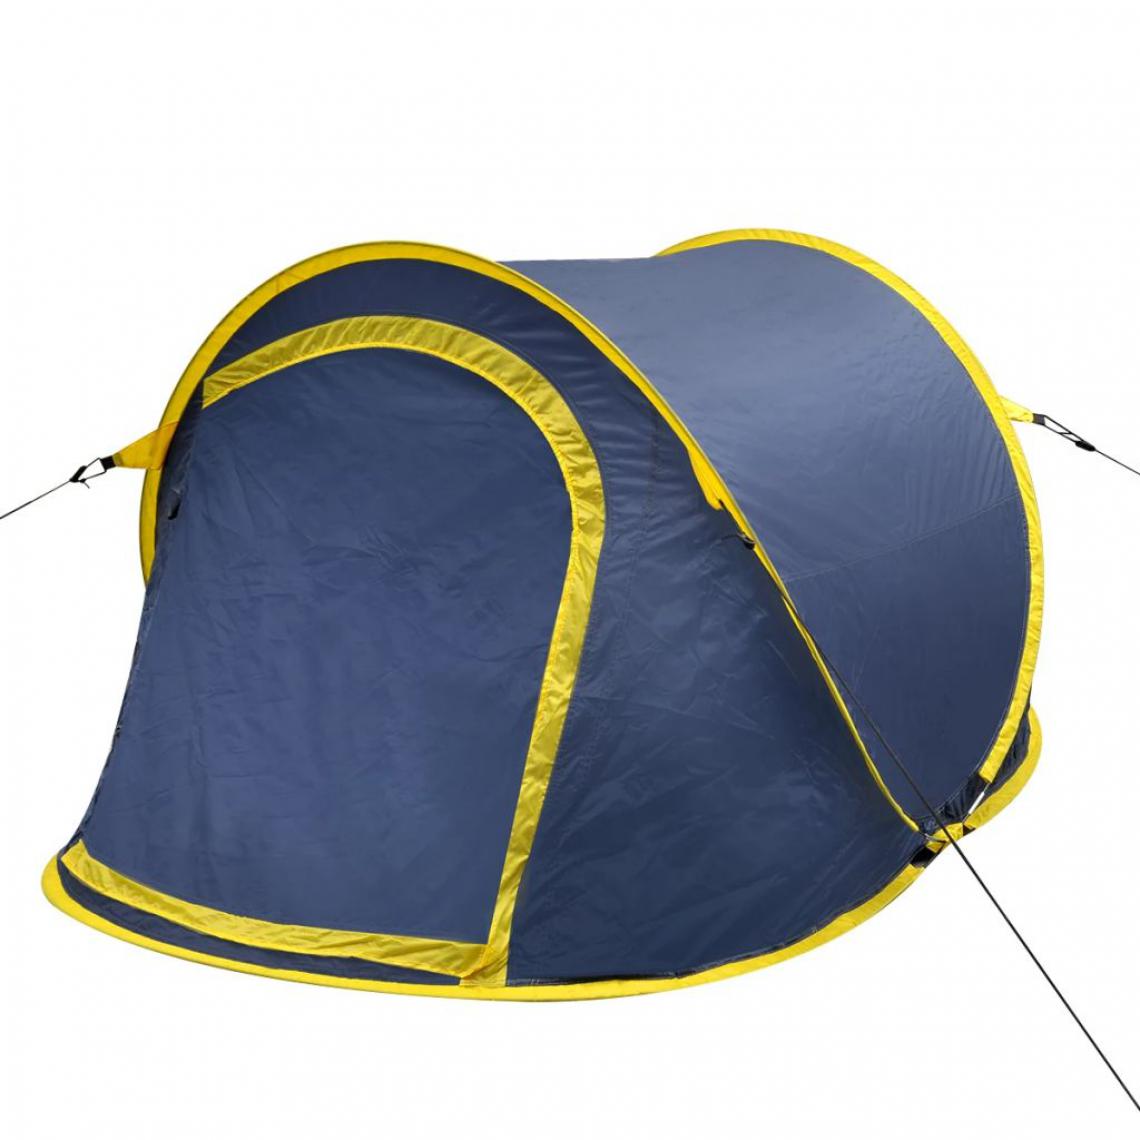 Icaverne - Esthetique Camping et randonnée selection Dublin Tente de camping pour 2 personnes bleu-marine / Jaune - Pergolas et Tonnelles